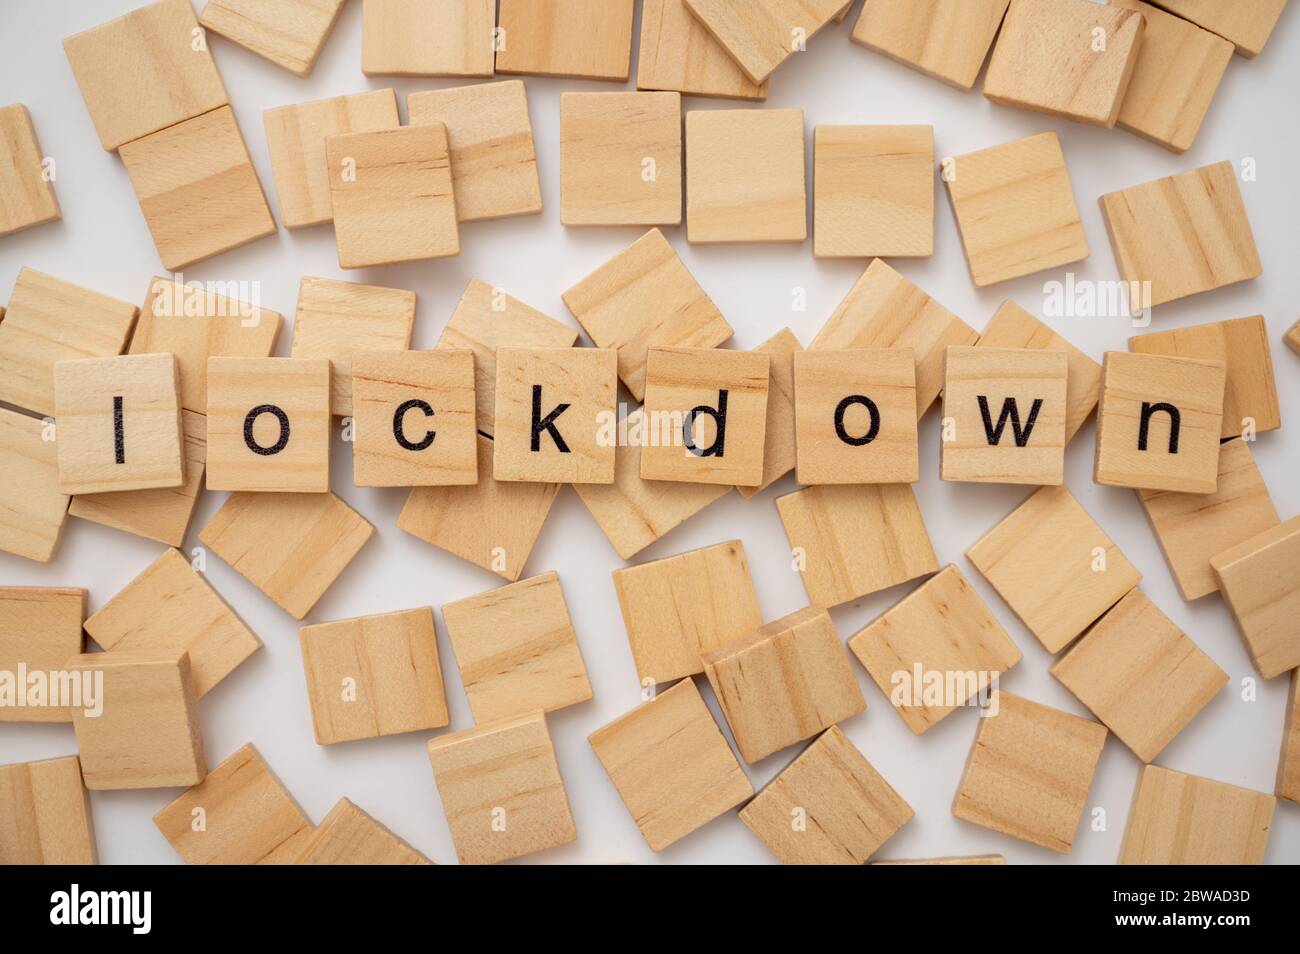 Wooden letter tiles spelling the word LOCKDOWN Stock Photo